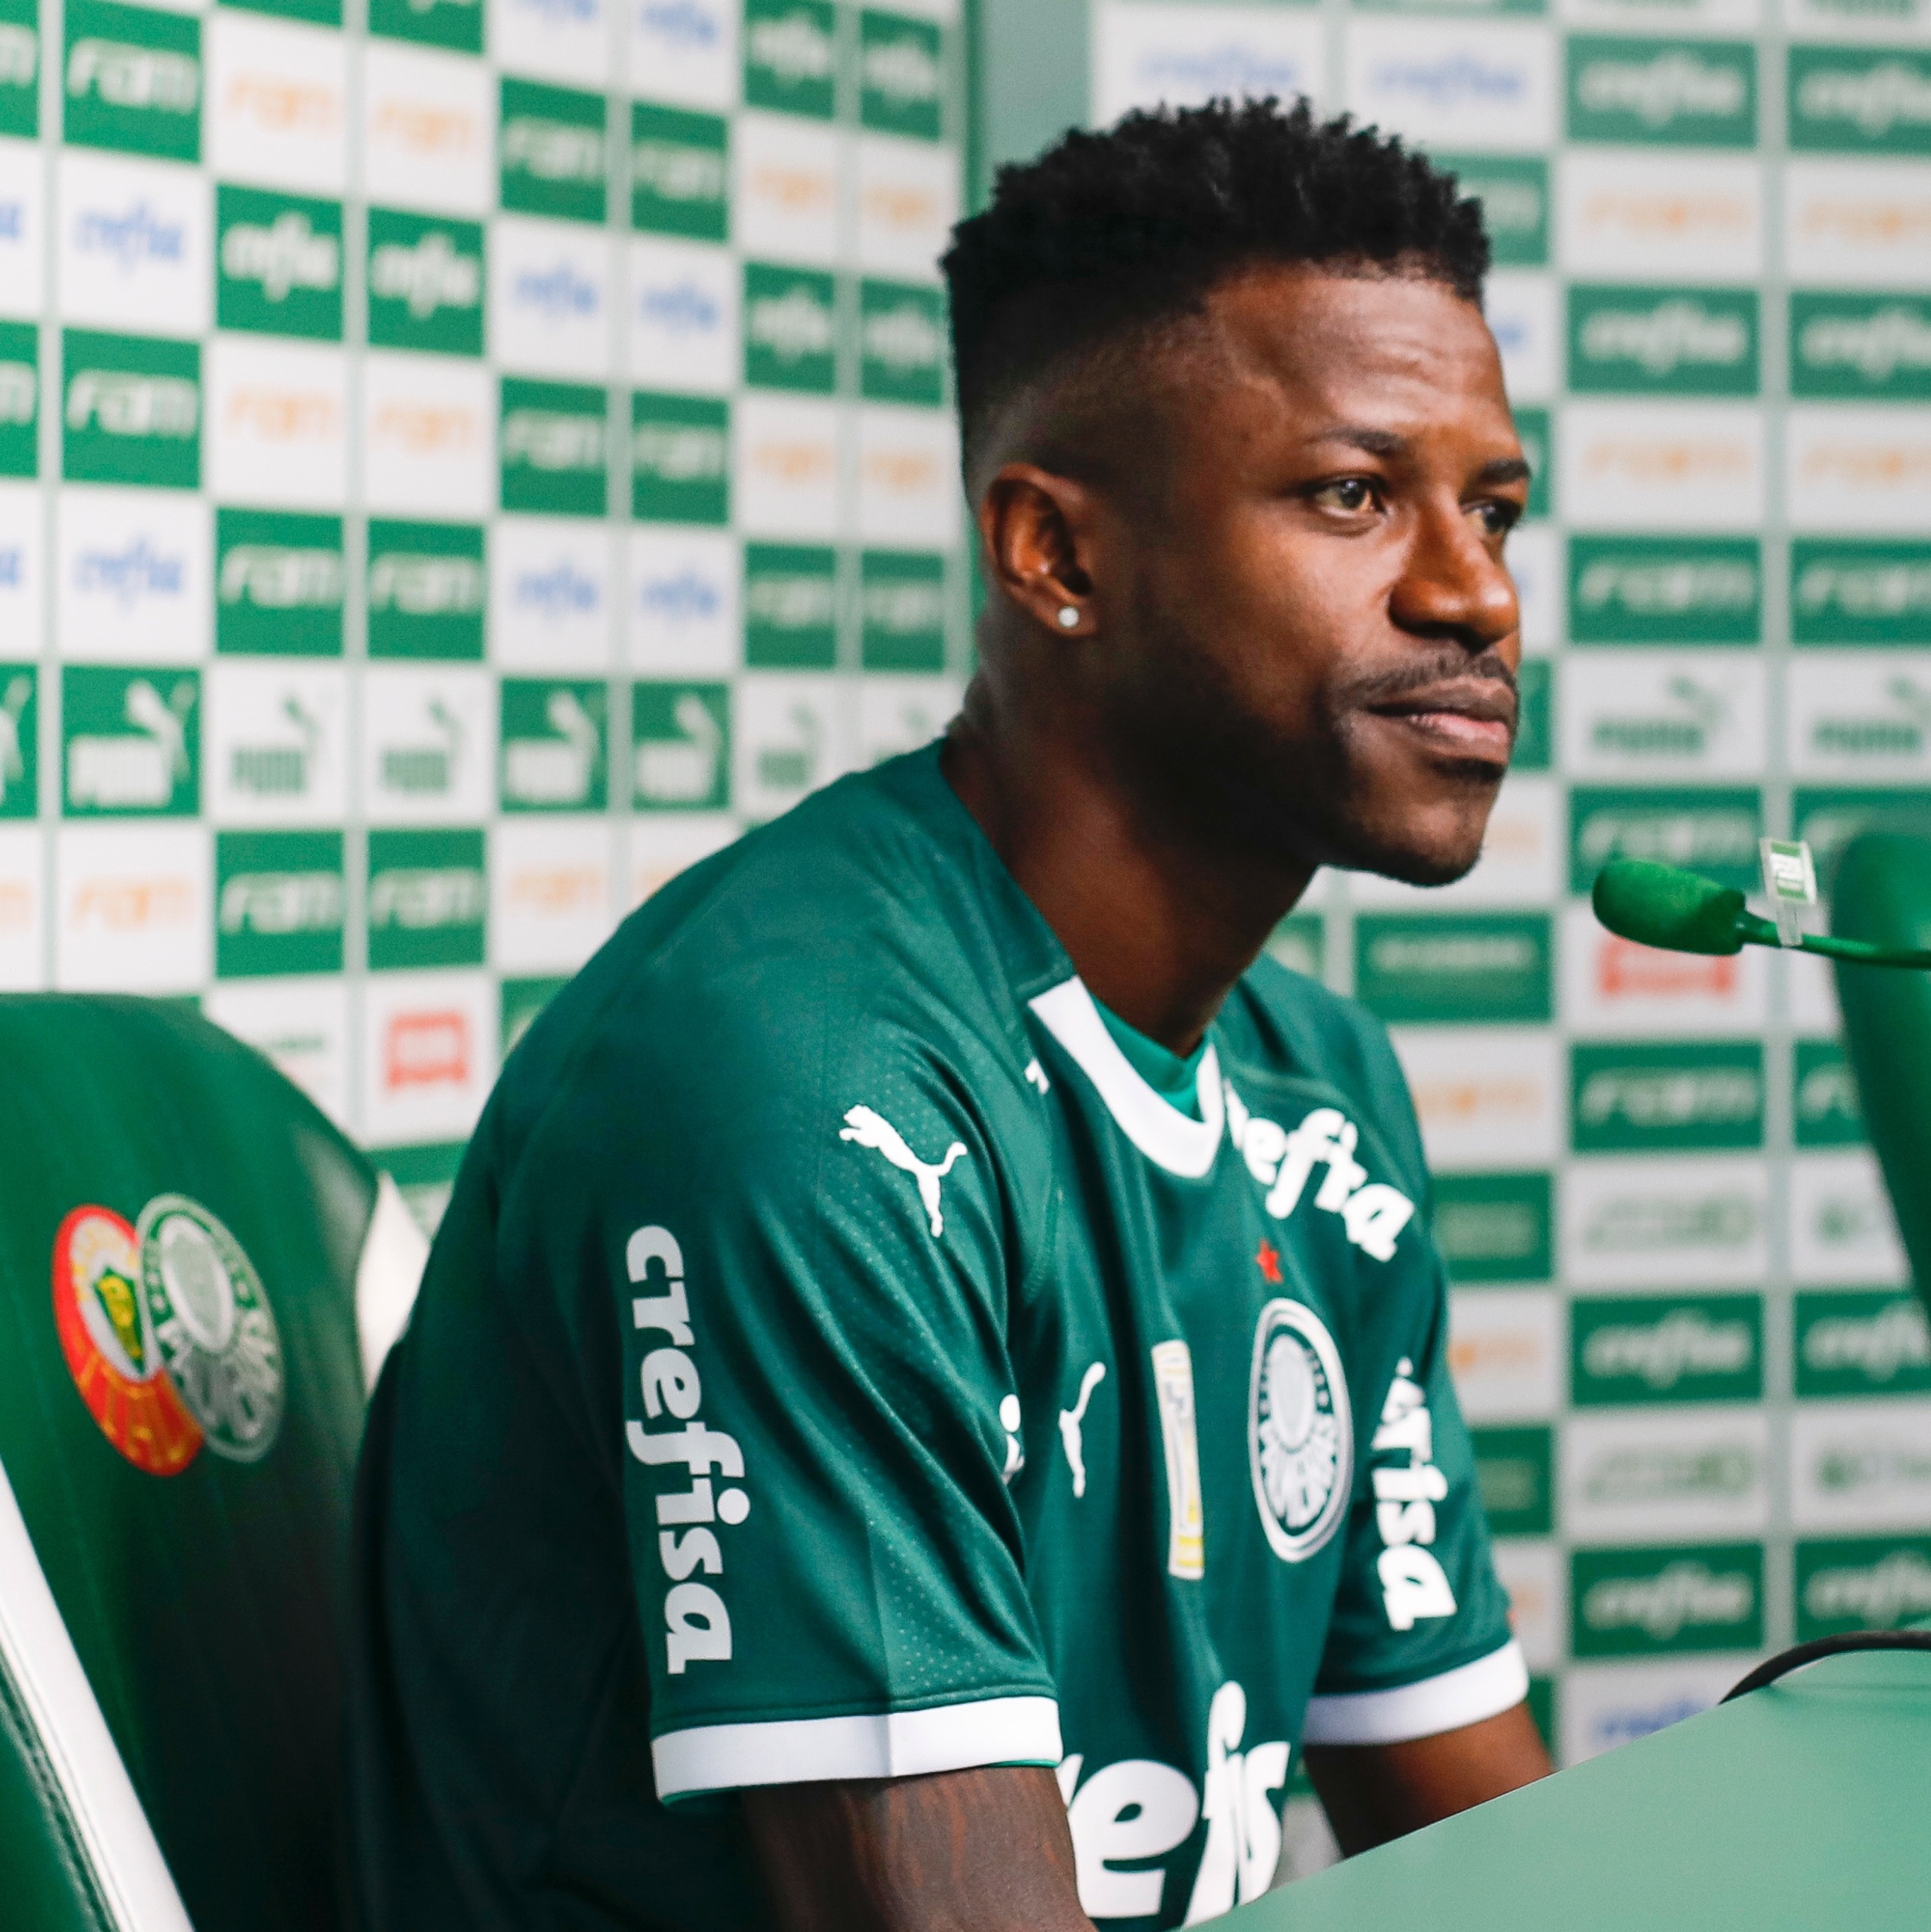 Palmeiras: Ramires passou por cirurgia e só volta em 2020